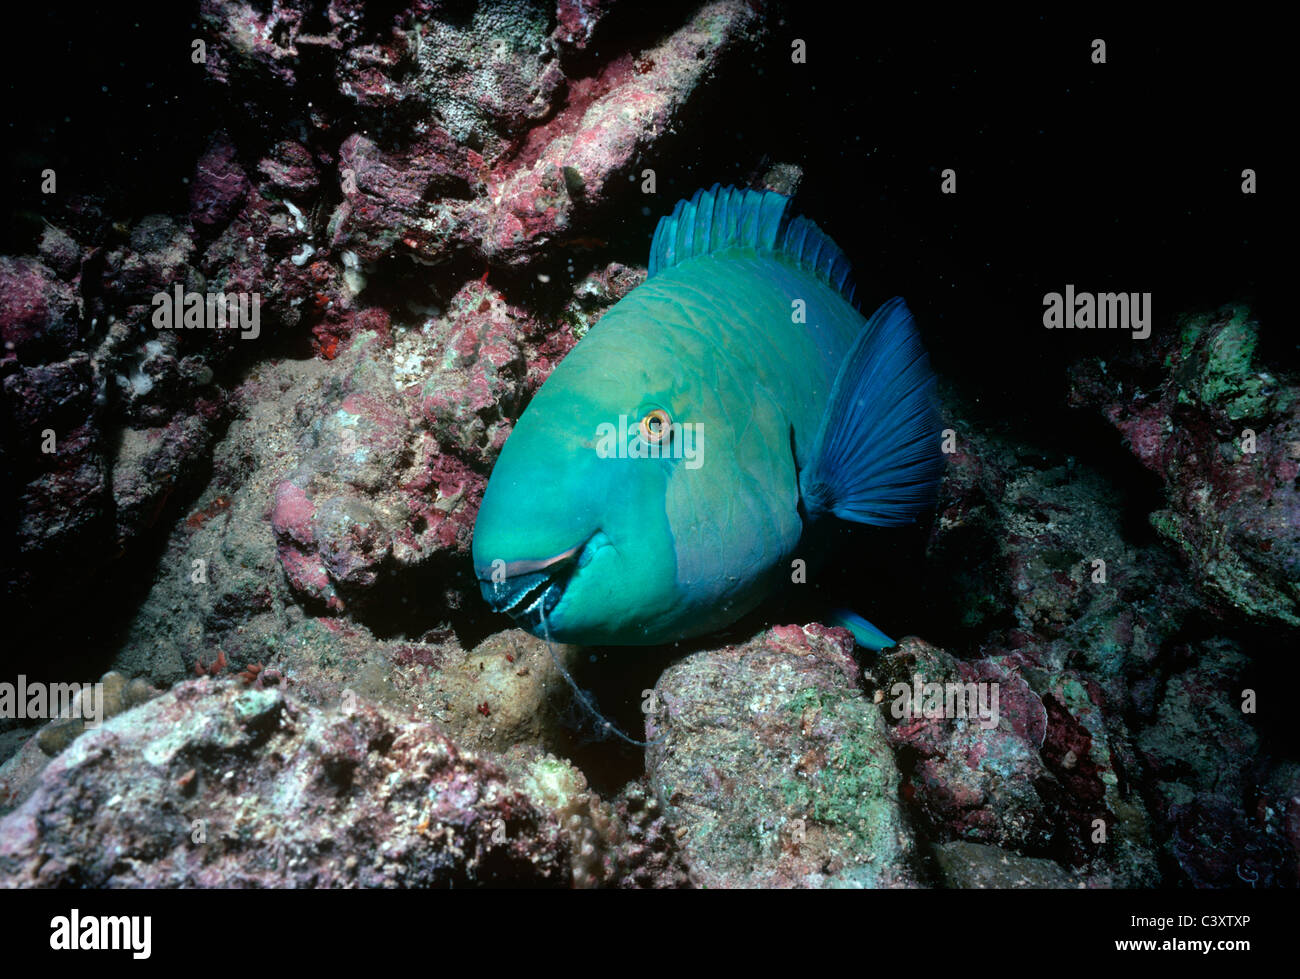 Maschio pesci pappagallo Steepheaded (Scarus gibbus) dorme nel muco protettivo membrana in una Grotta del corallo di notte. Egitto, Mar Rosso. Foto Stock